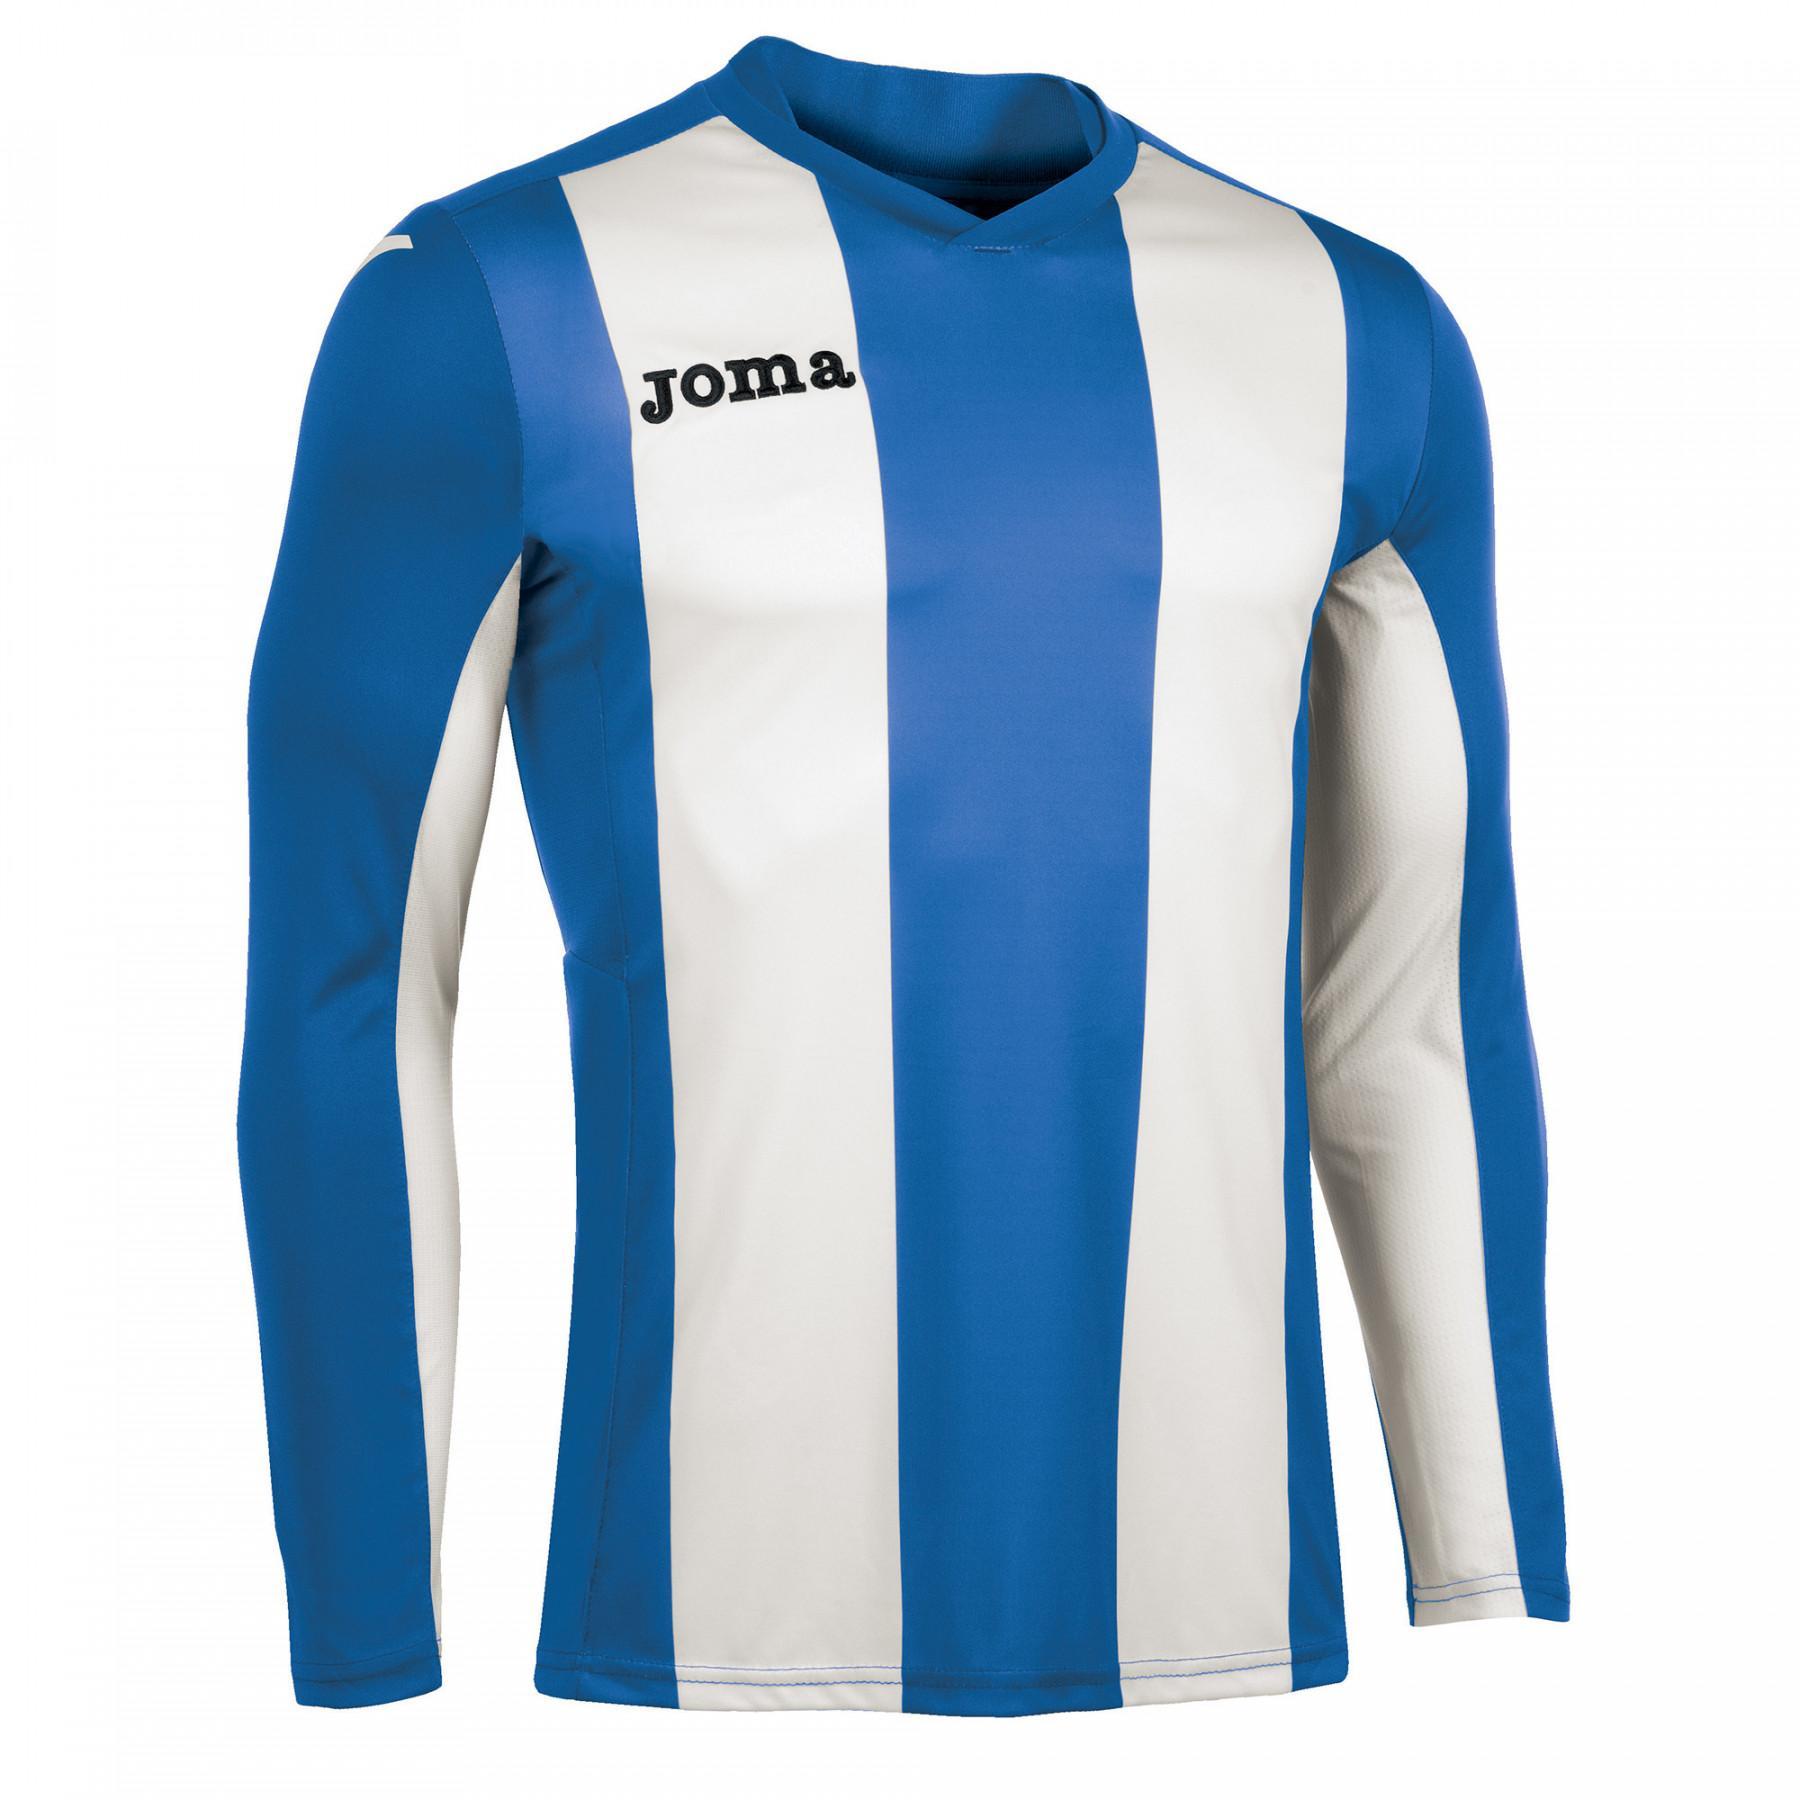 Junior long-sleeved jersey Joma Pisa